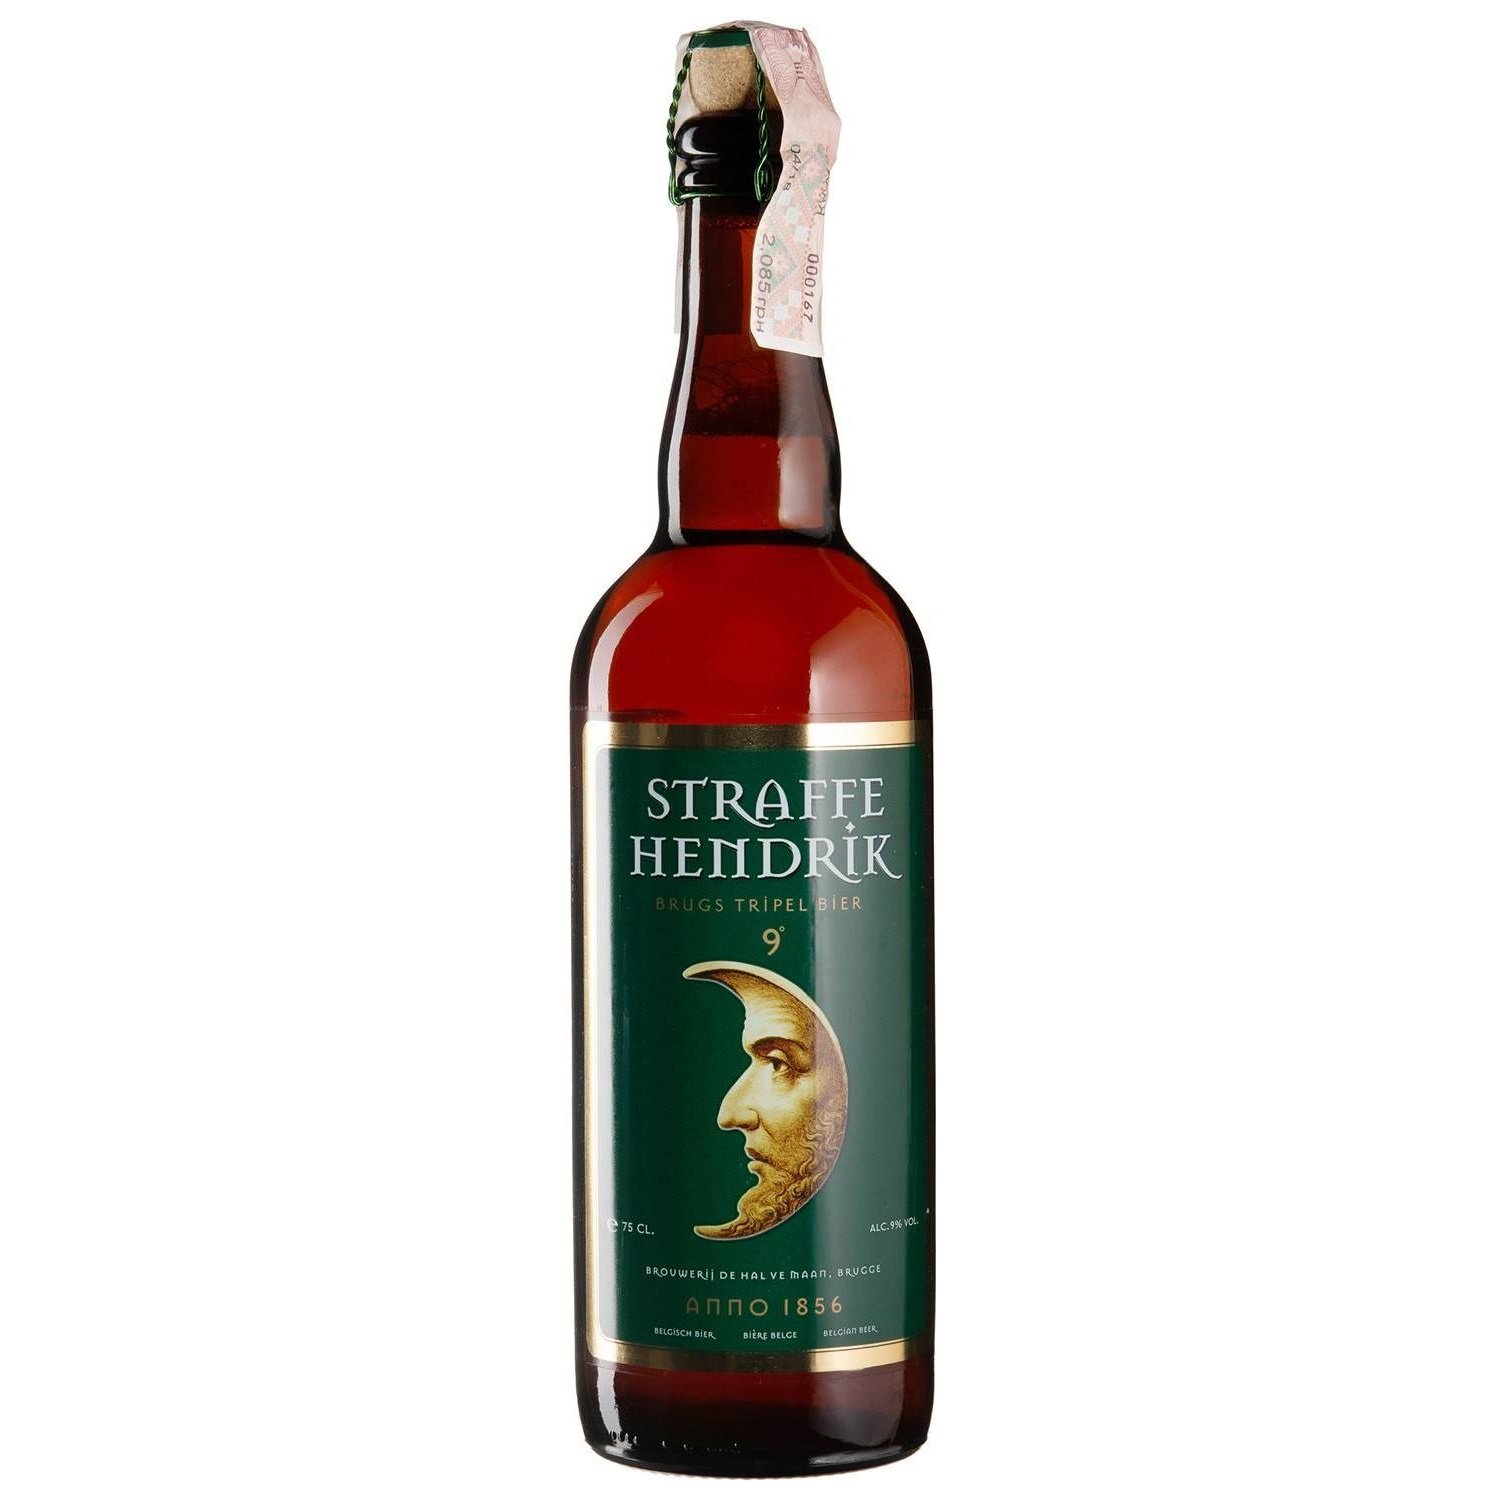 Пиво Straffe Hendrik Tripel, светлое, фильтрованное, 9%, 0,75 л (36463) - фото 1